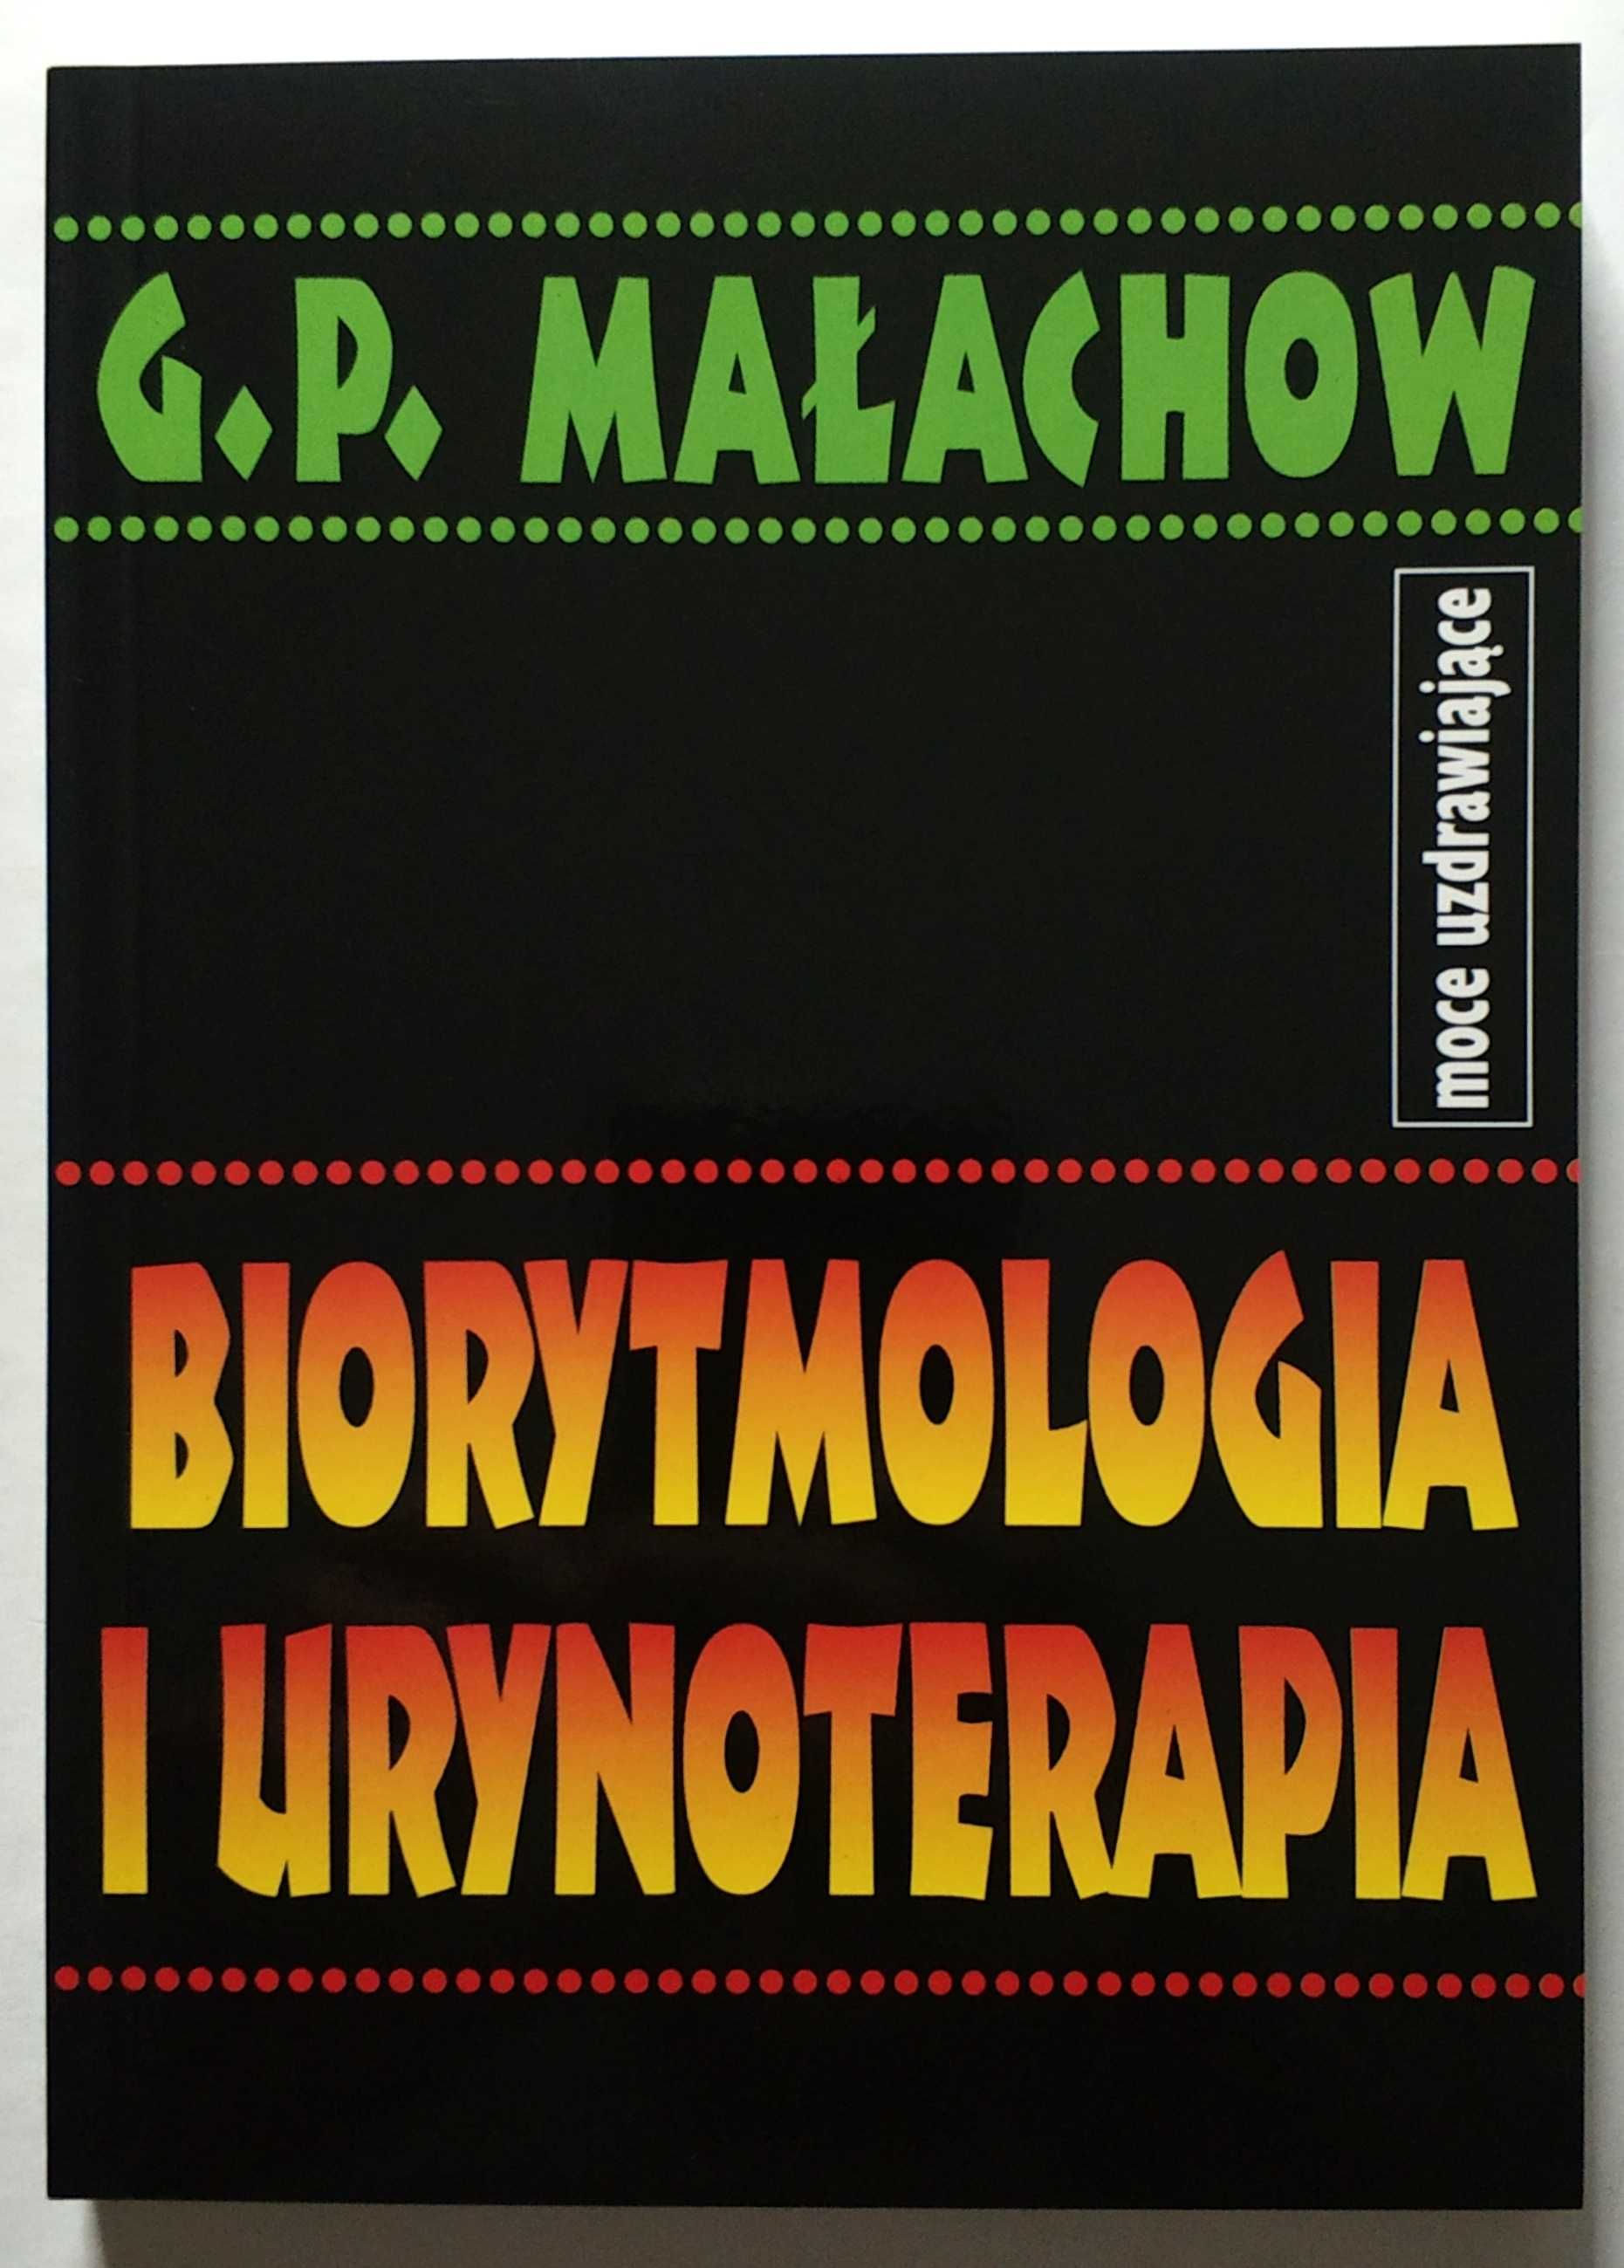 Biorytmologia i urynoterapia + Własny system samouzdrawiania, Małachow